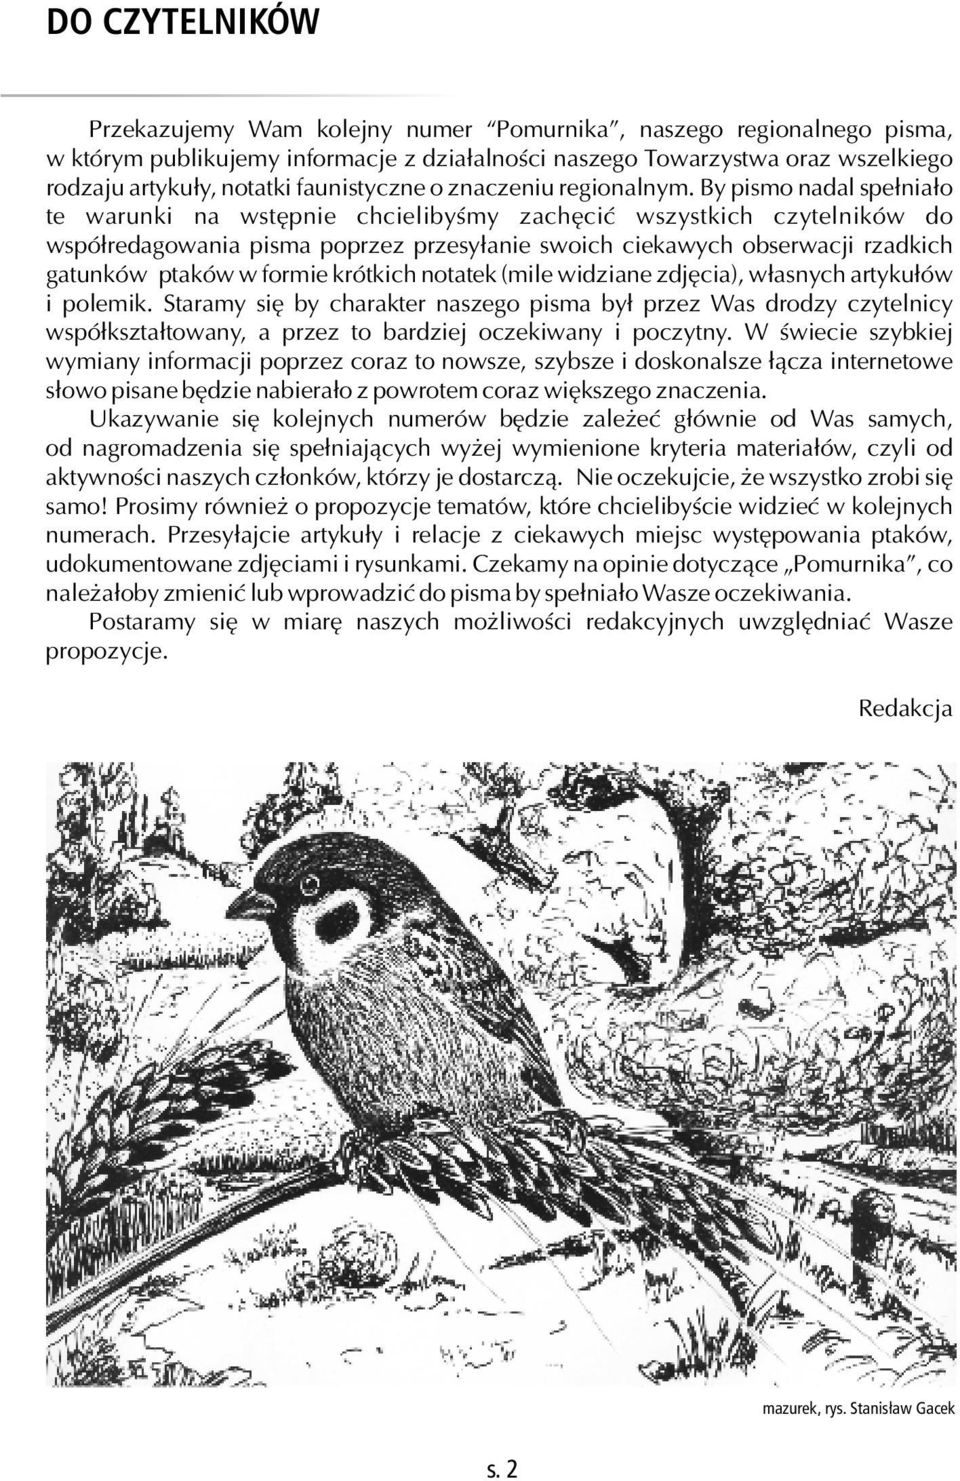 By pismo nadal spełniało te warunki na wstępnie chcielibyśmy zachęcić wszystkich czytelników do współredagowania pisma poprzez przesyłanie swoich ciekawych obserwacji rzadkich gatunków ptaków w